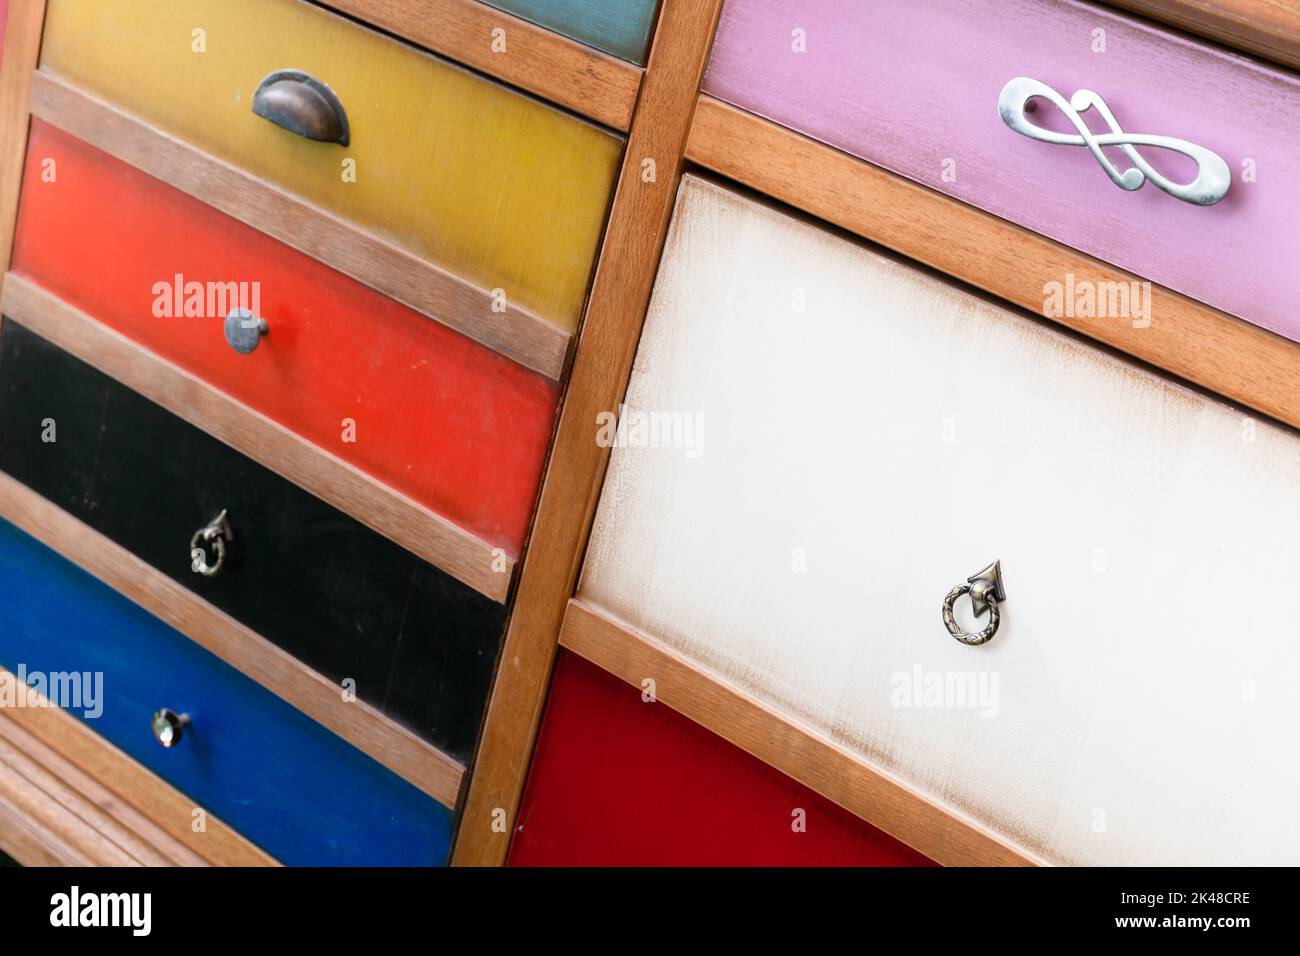 Kommode Schubladen mit bunten Panels und verschiedenen Arten von Griffen, Nahaufnahme Foto Stockfoto